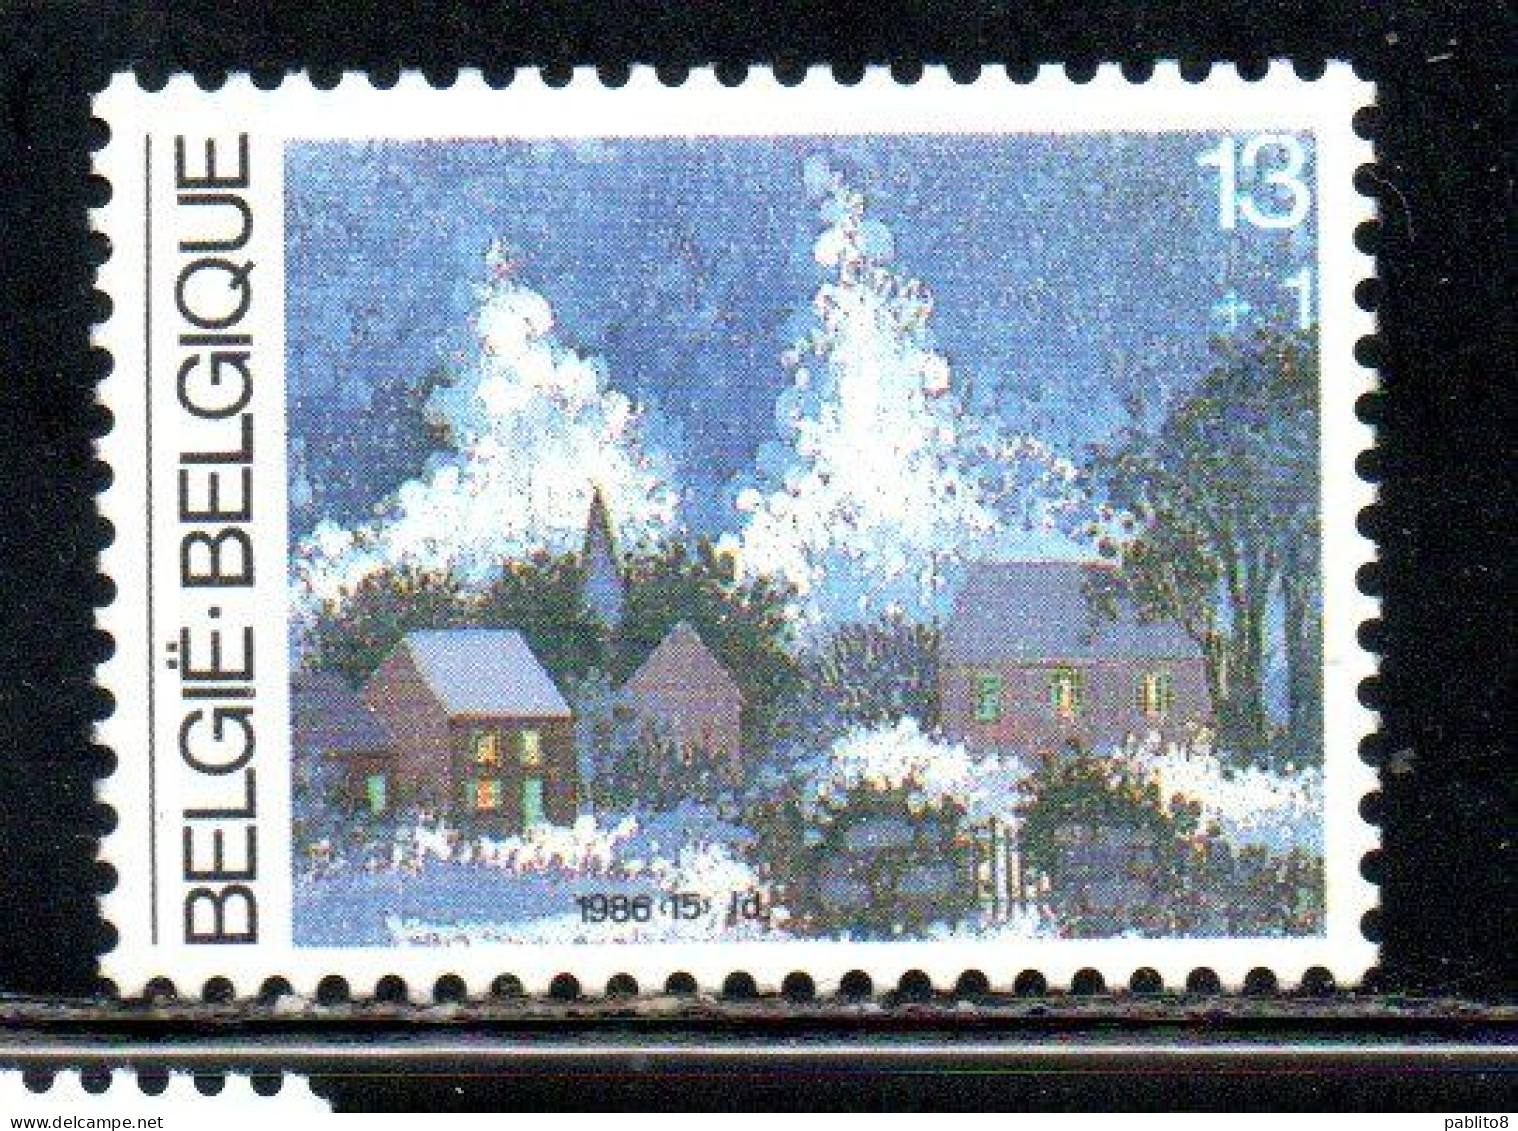 BELGIQUE BELGIE BELGIO BELGIUM 1986 CHRISTMAS NOEL NATALE WEIHNACHTEN NAVIDAD 13 + 1fr MNH - Ungebraucht